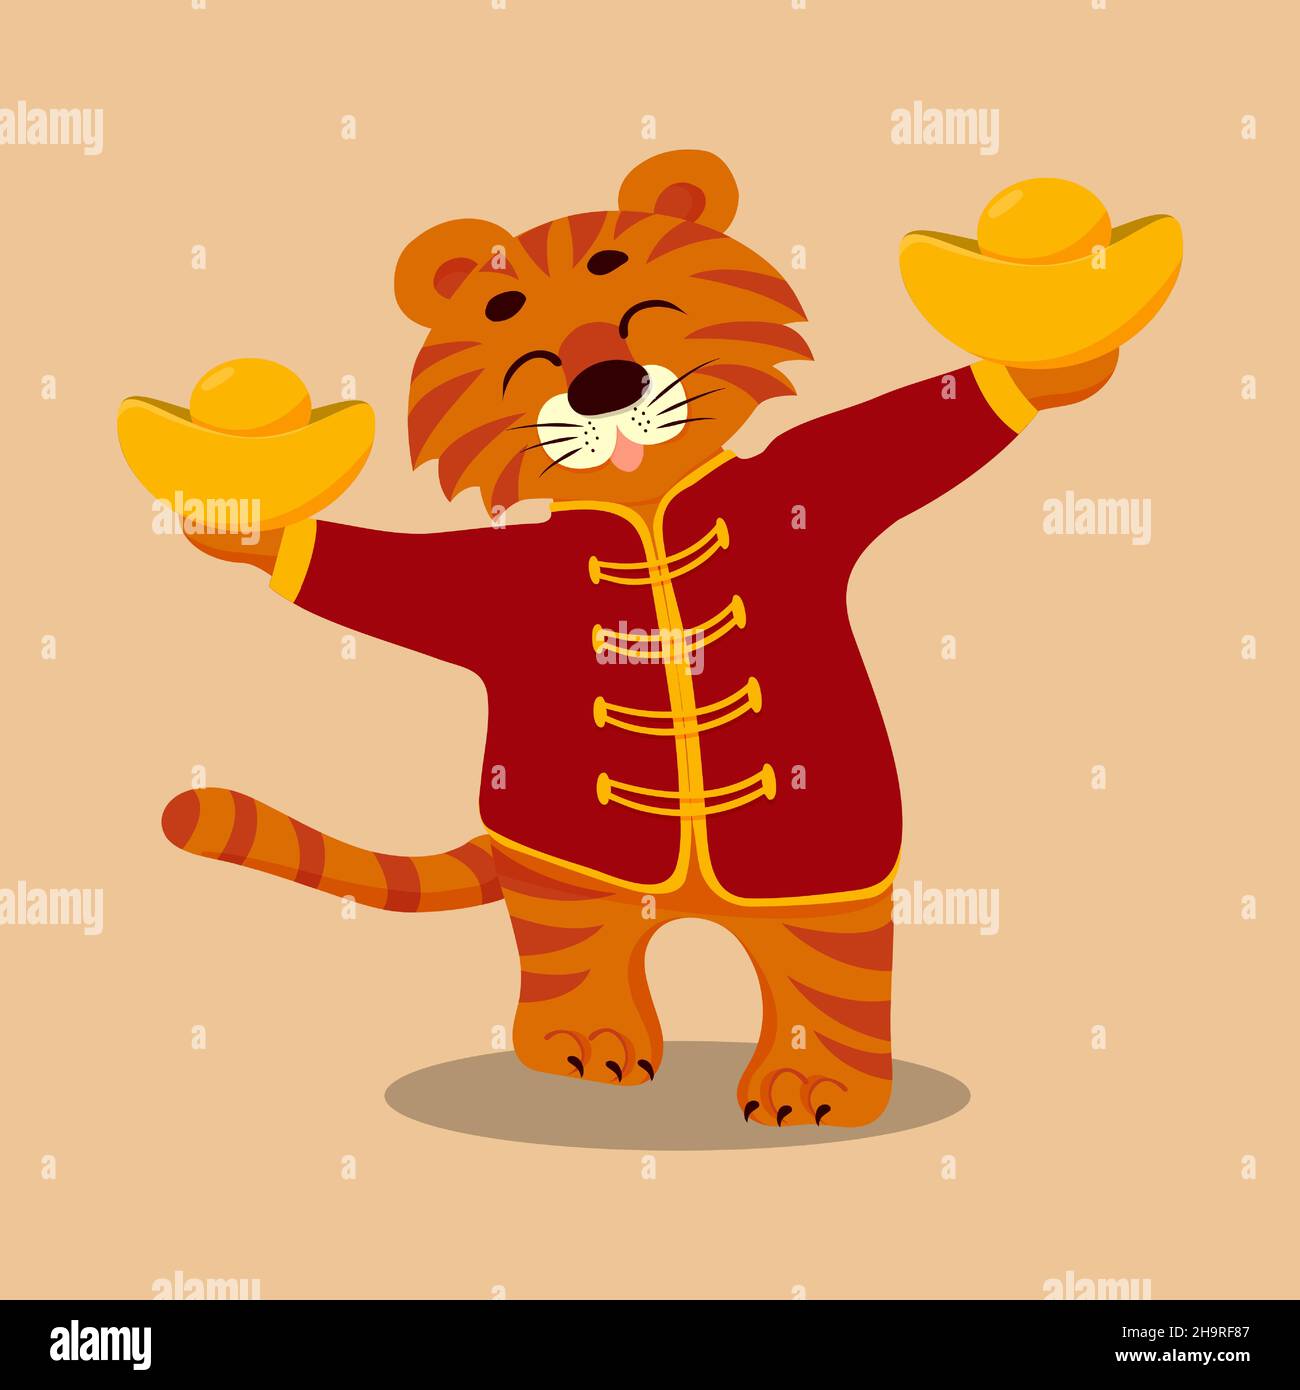 Un joli tigre de dessin animé dans une veste rouge tient des barres dorées.Signe de l'année 2022 chinois.Nouvelle année lunaire en Corée.Affiche des fêtes.Vecteur plat Illustration de Vecteur